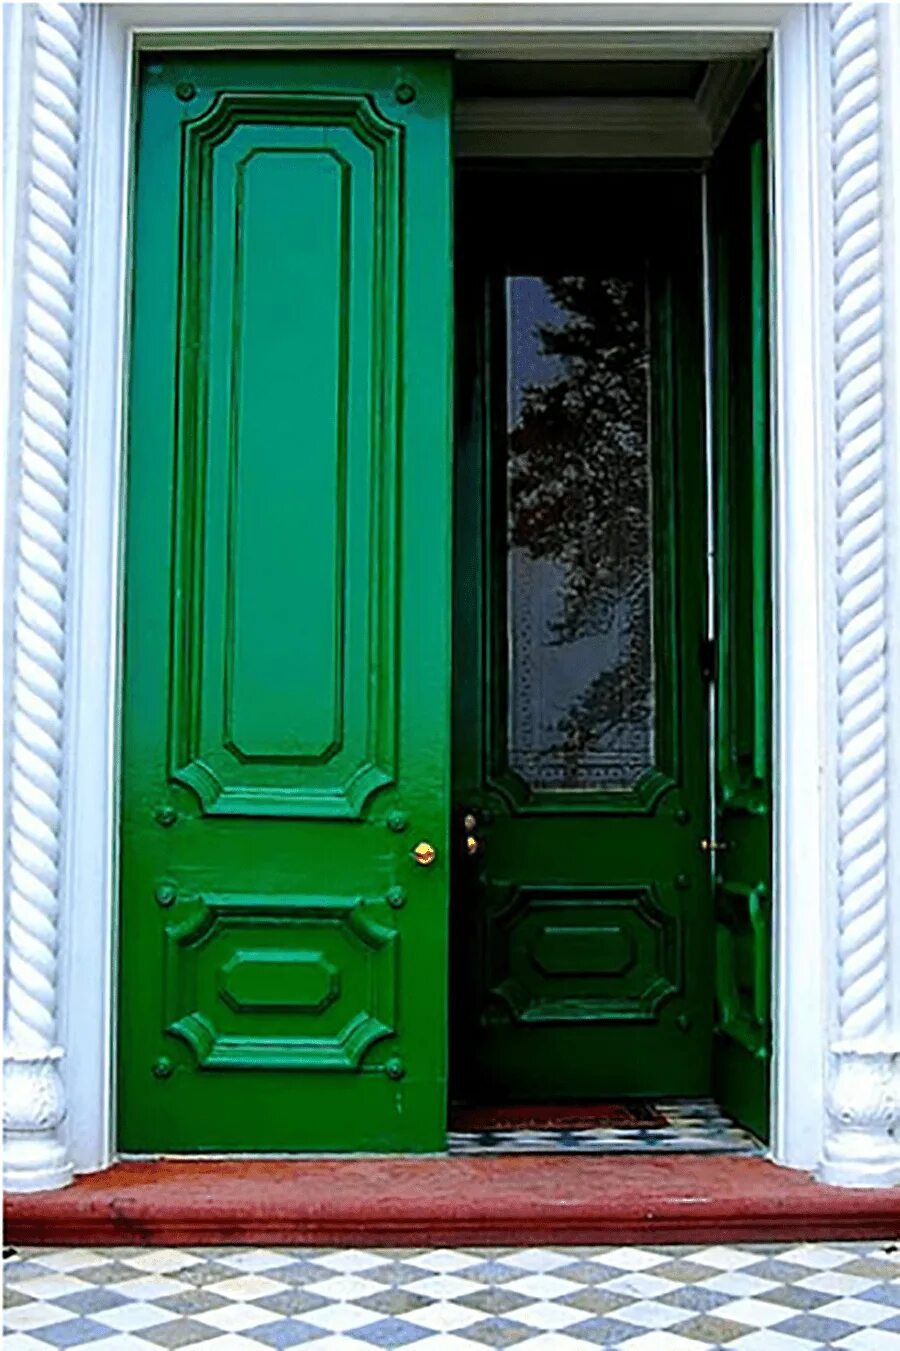 Green Doors входные двери синяя. Зеленая дверь Фалько дверь скандия. Green Doors Полоцкая. Зеленая входная дверь.